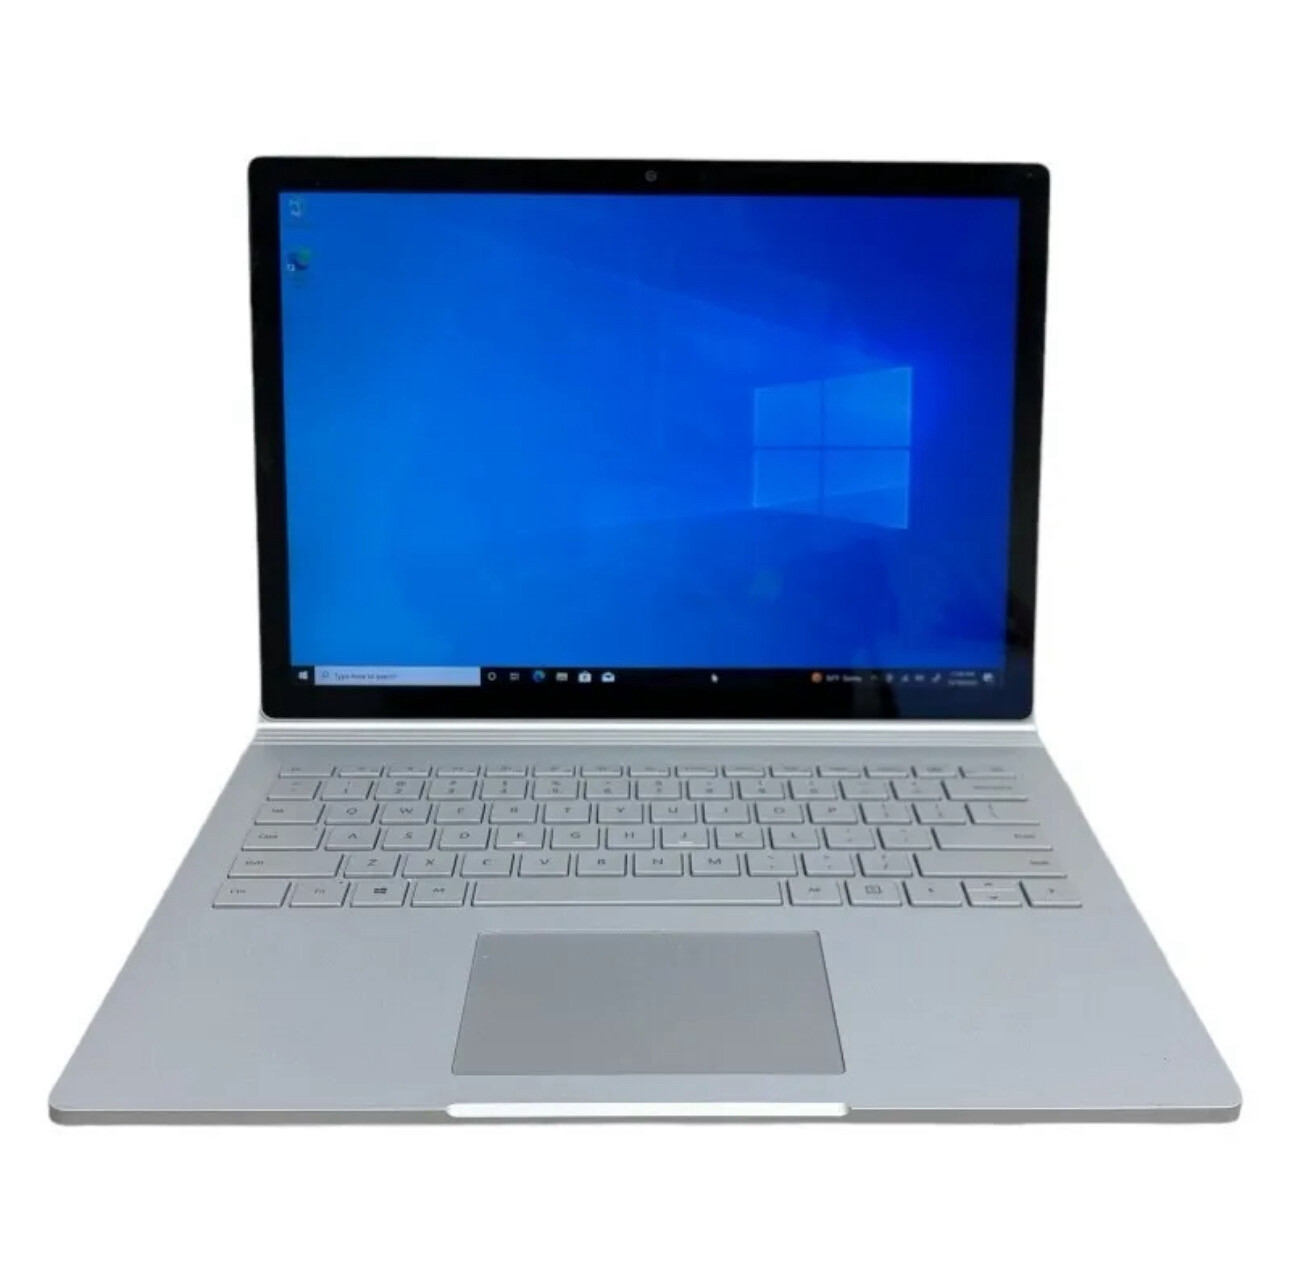 Microsoft Surface Book 1703 13.5" i5-6300U 2.4GHz 8GB 128GB (Dents On Lip)